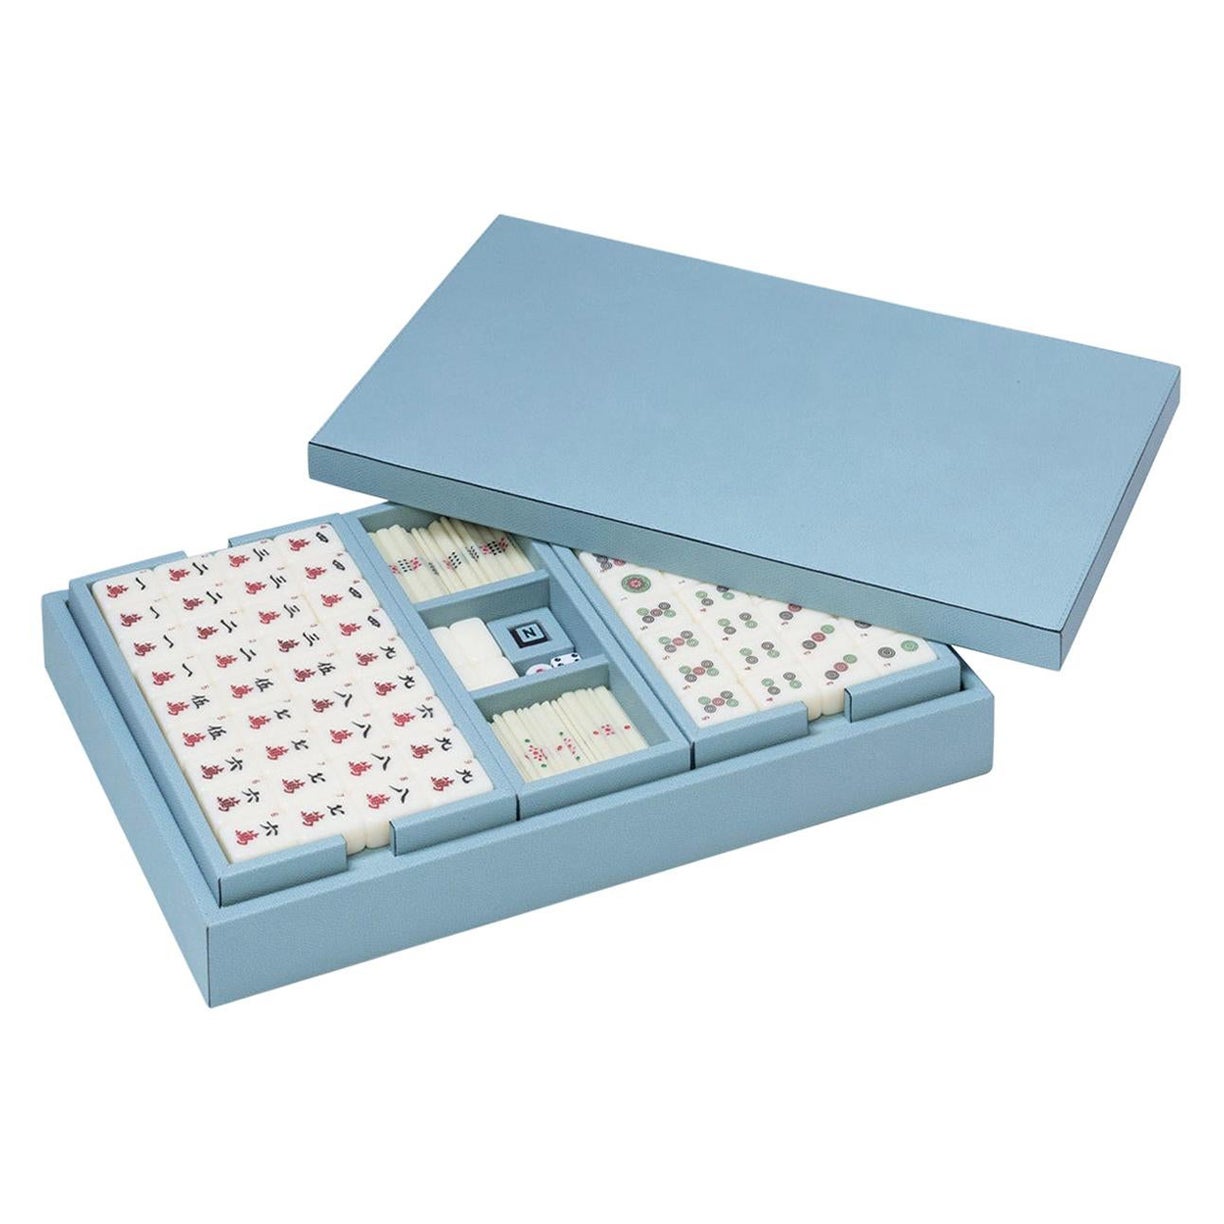 Mahjong Game Set For Sale